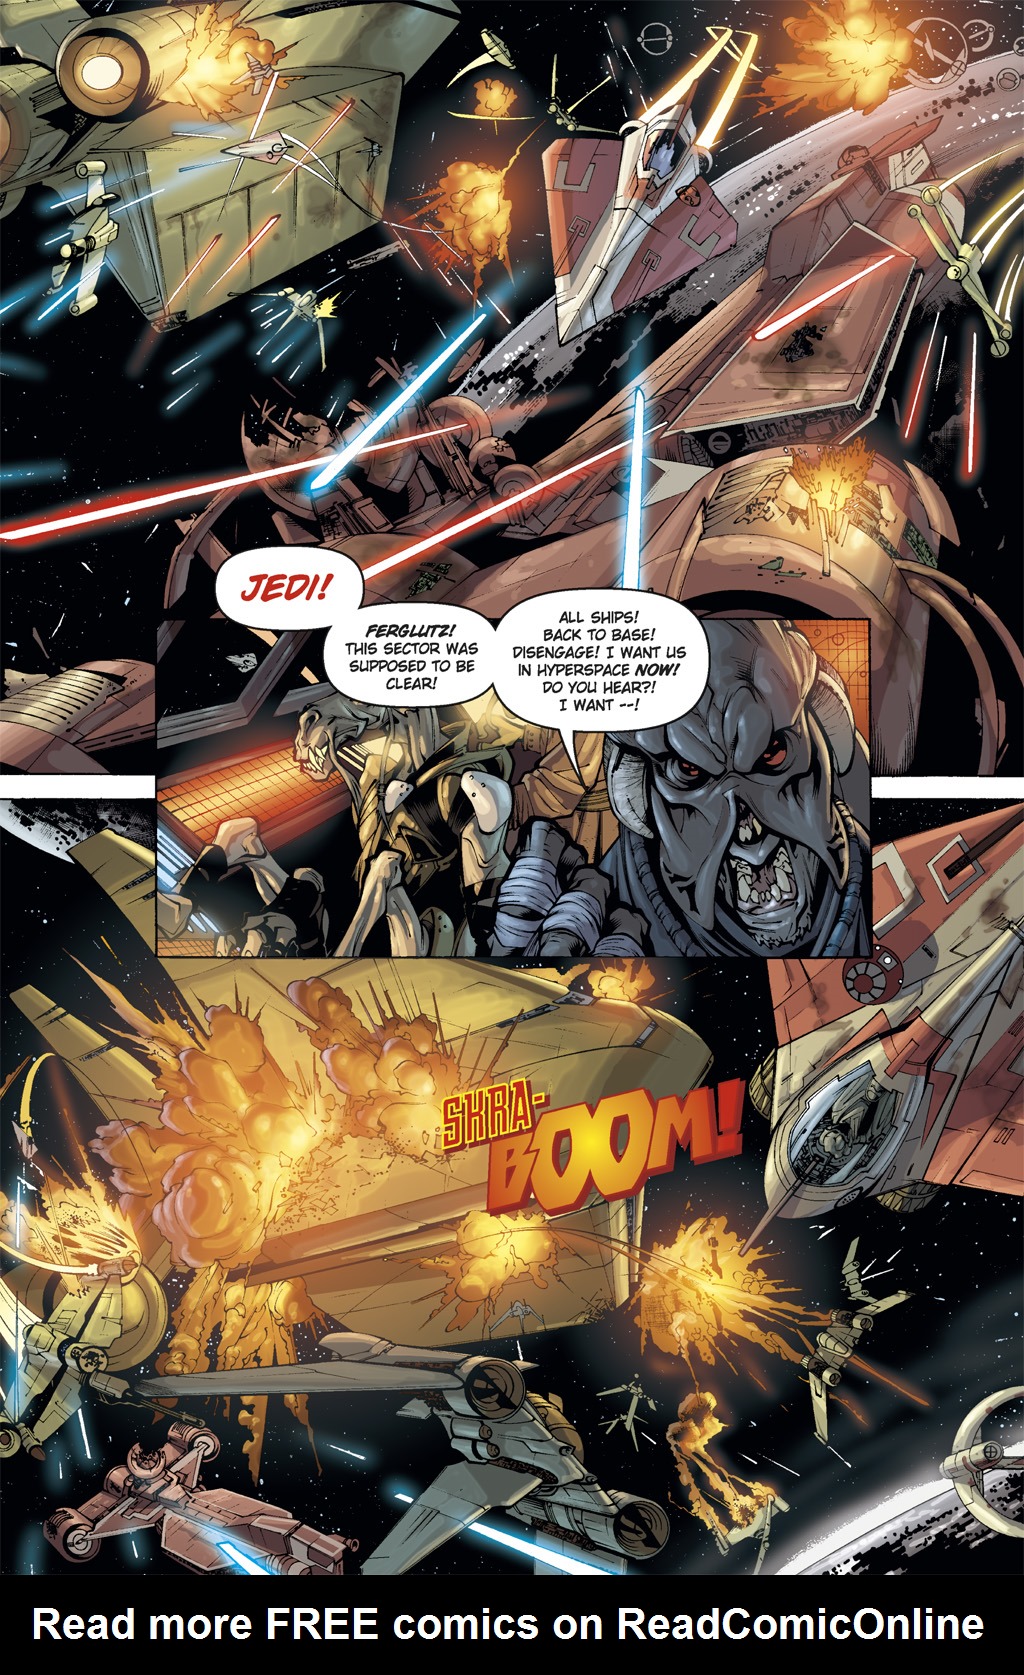 Read online Star Wars: Clone Wars comic -  Issue # TPB 5 - 10